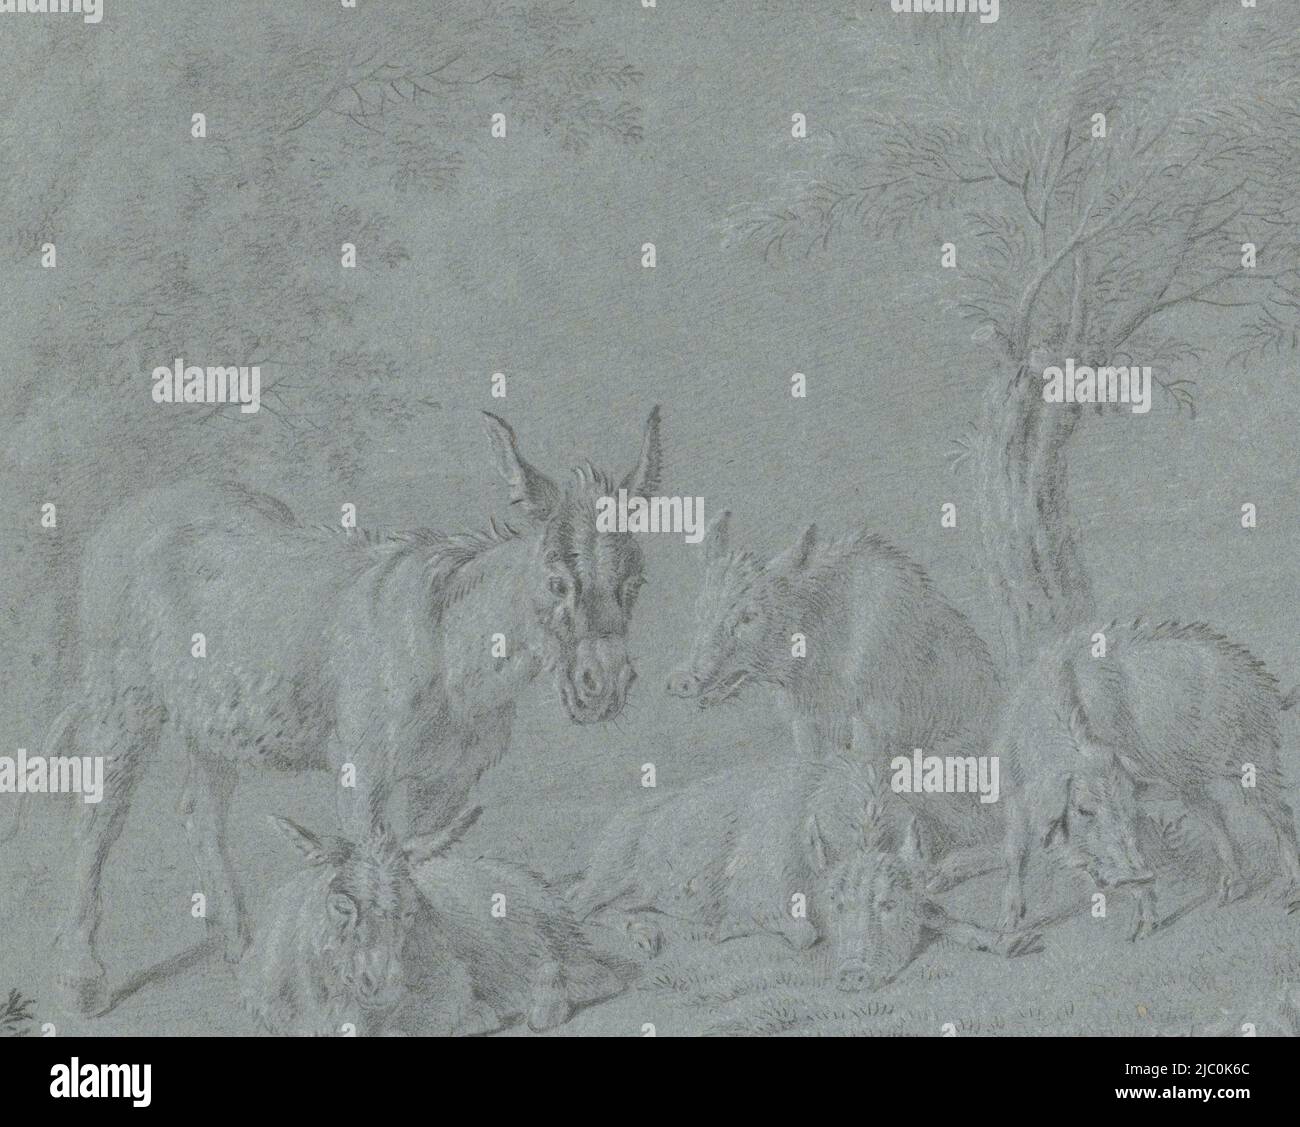 Cochons et ânes sous arbres, rapporteur pour avis: Jan van Gool, 1695 - 1763, papier, h 210 mm × l 264 mm Banque D'Images